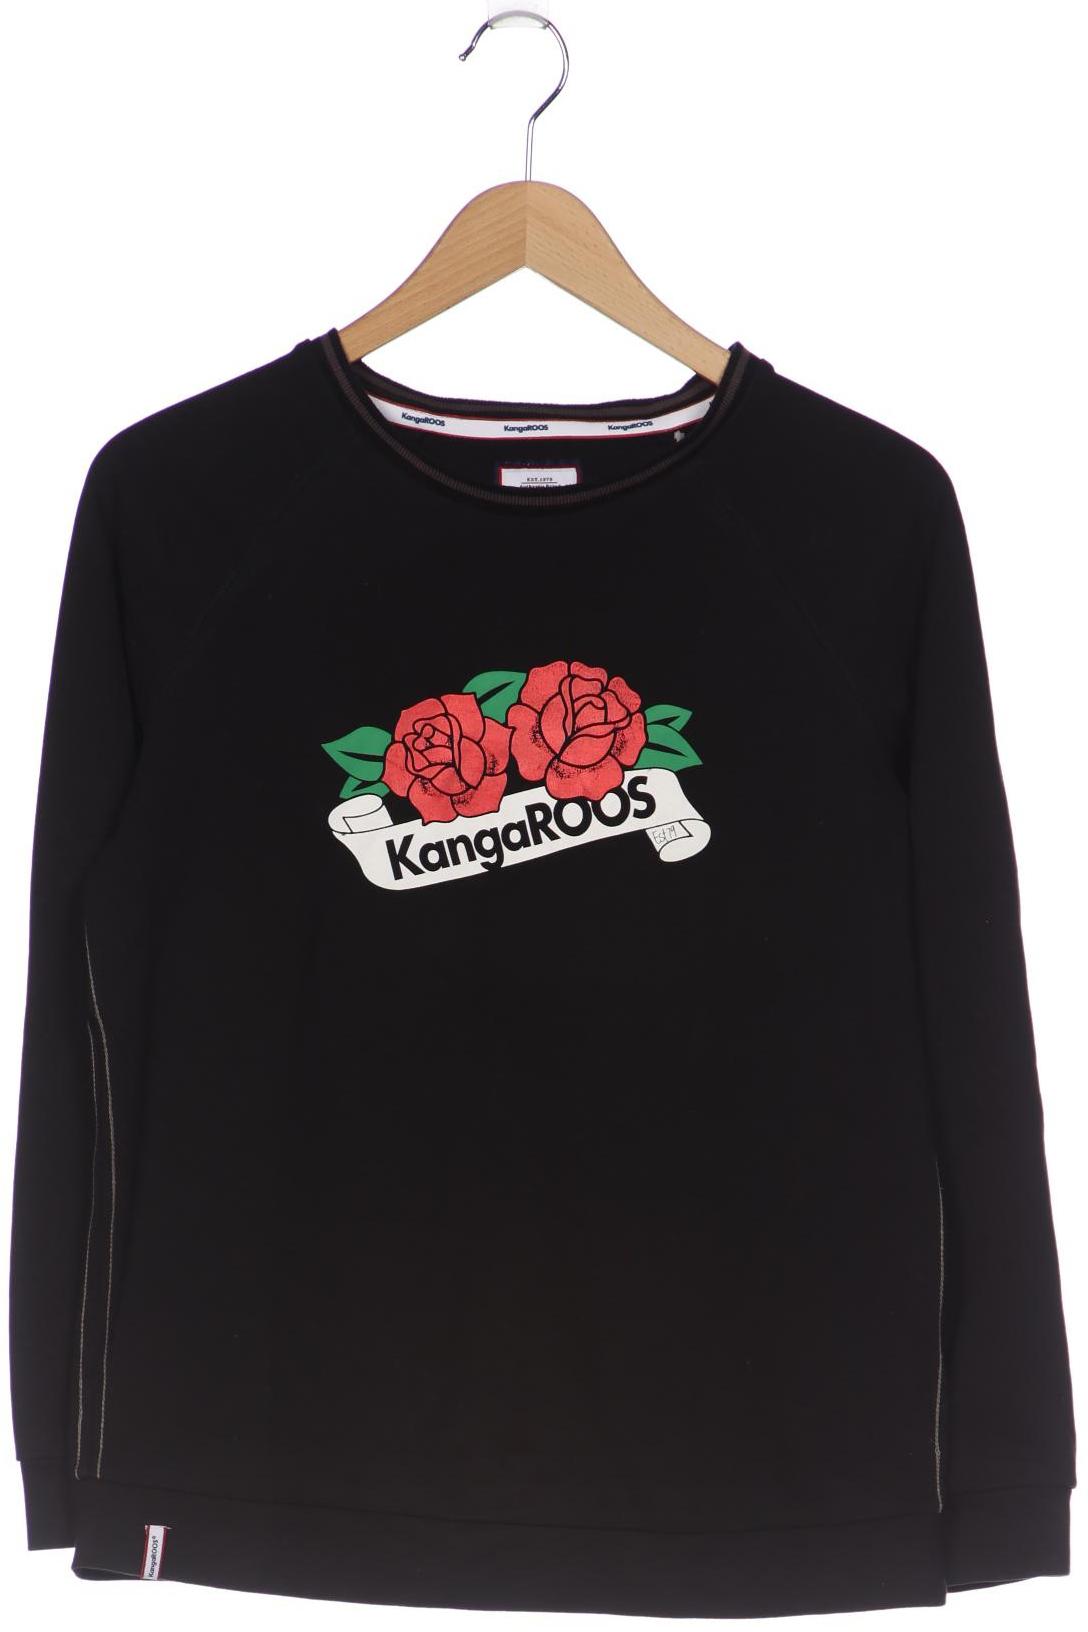 KangaROOS Damen Sweatshirt, schwarz, Gr. 40 von Kangaroos